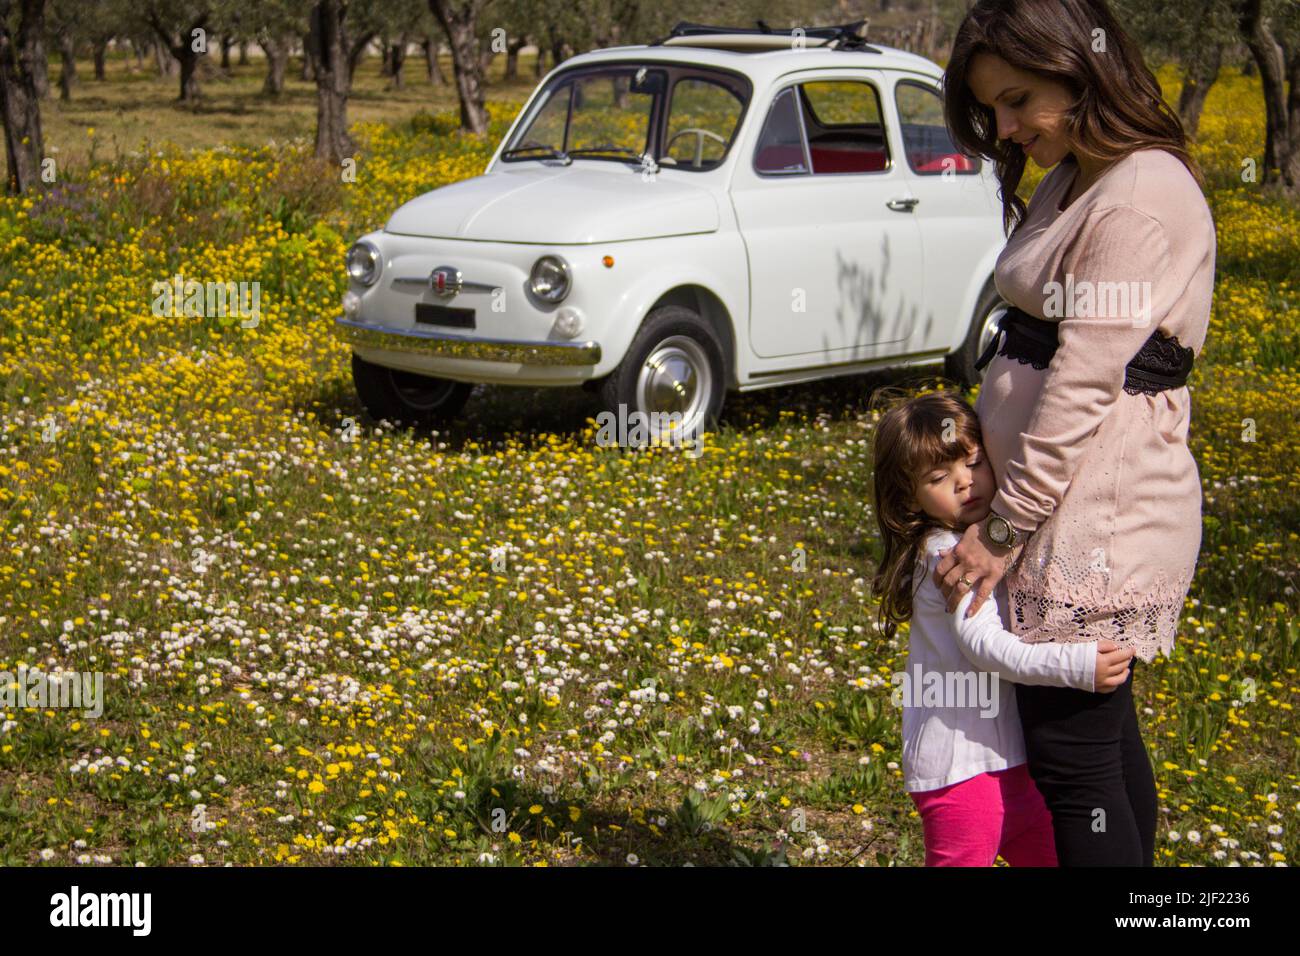 Image d'une jeune femme enceinte embrassant sa fille dans un champ fleuri avec une vieille voiture d'époque en arrière-plan. Vacances en Toscane Italie Banque D'Images